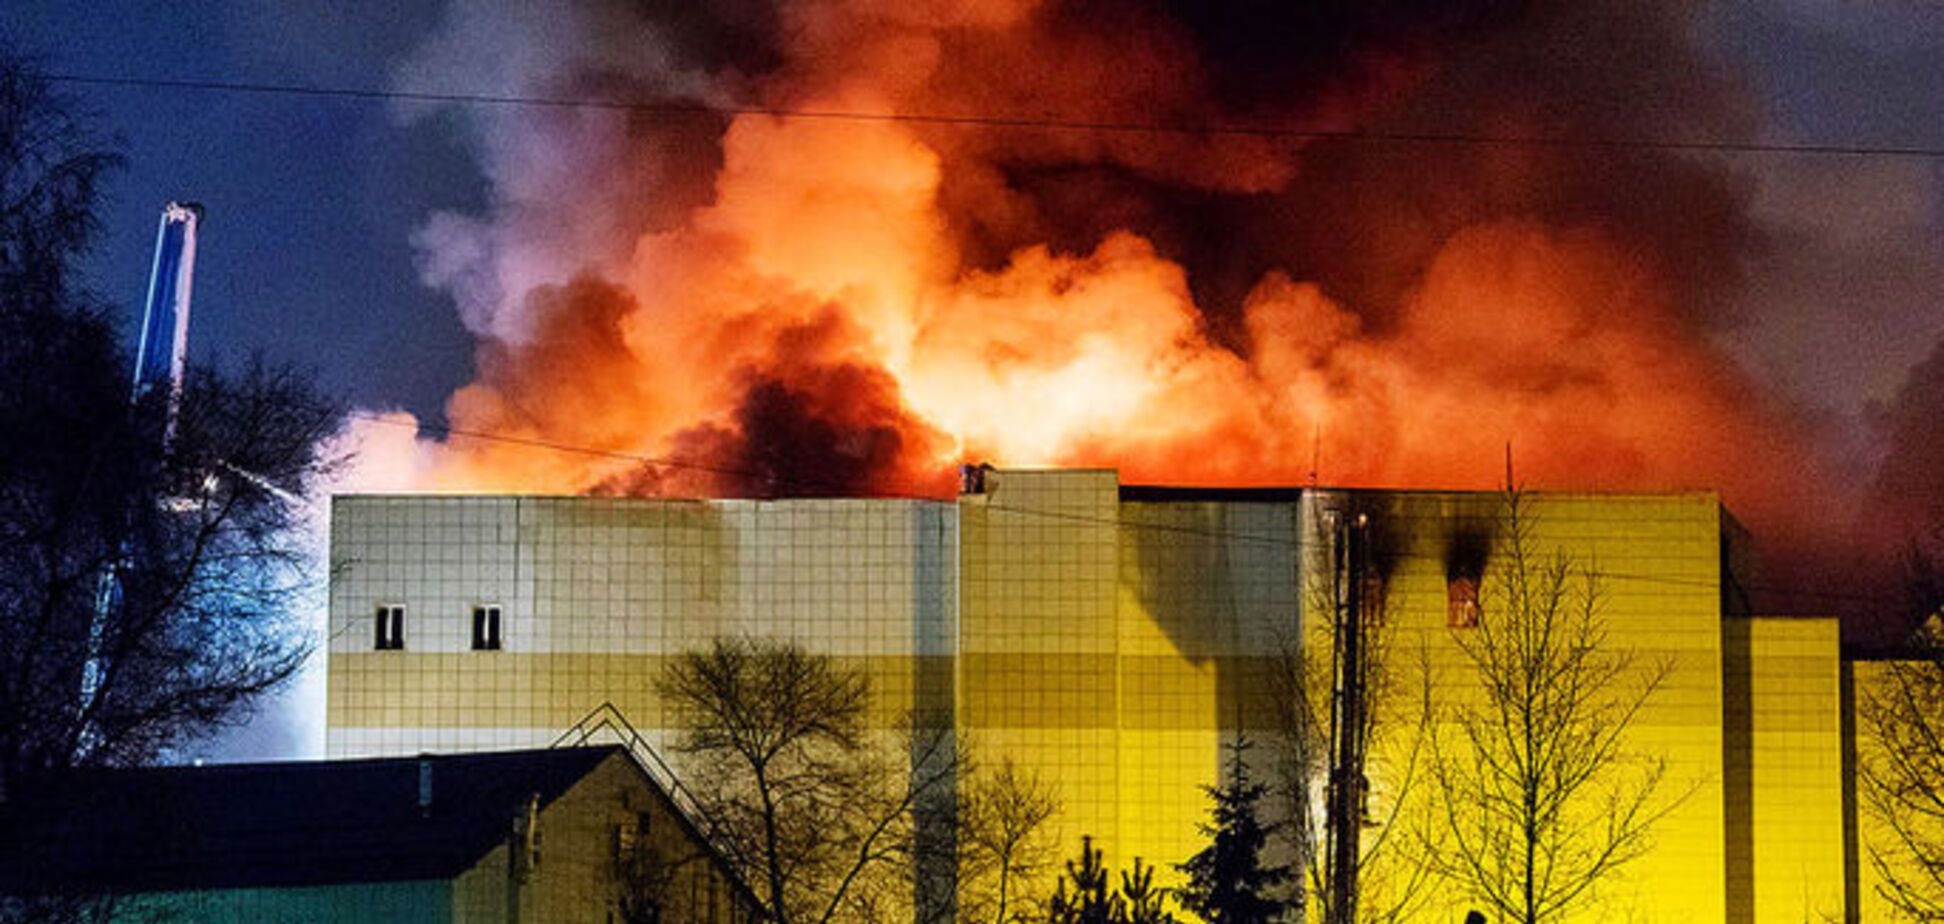  'Мама, я не хочу умирать!' Появилось аудио из эпицентра пожара в Кемерово